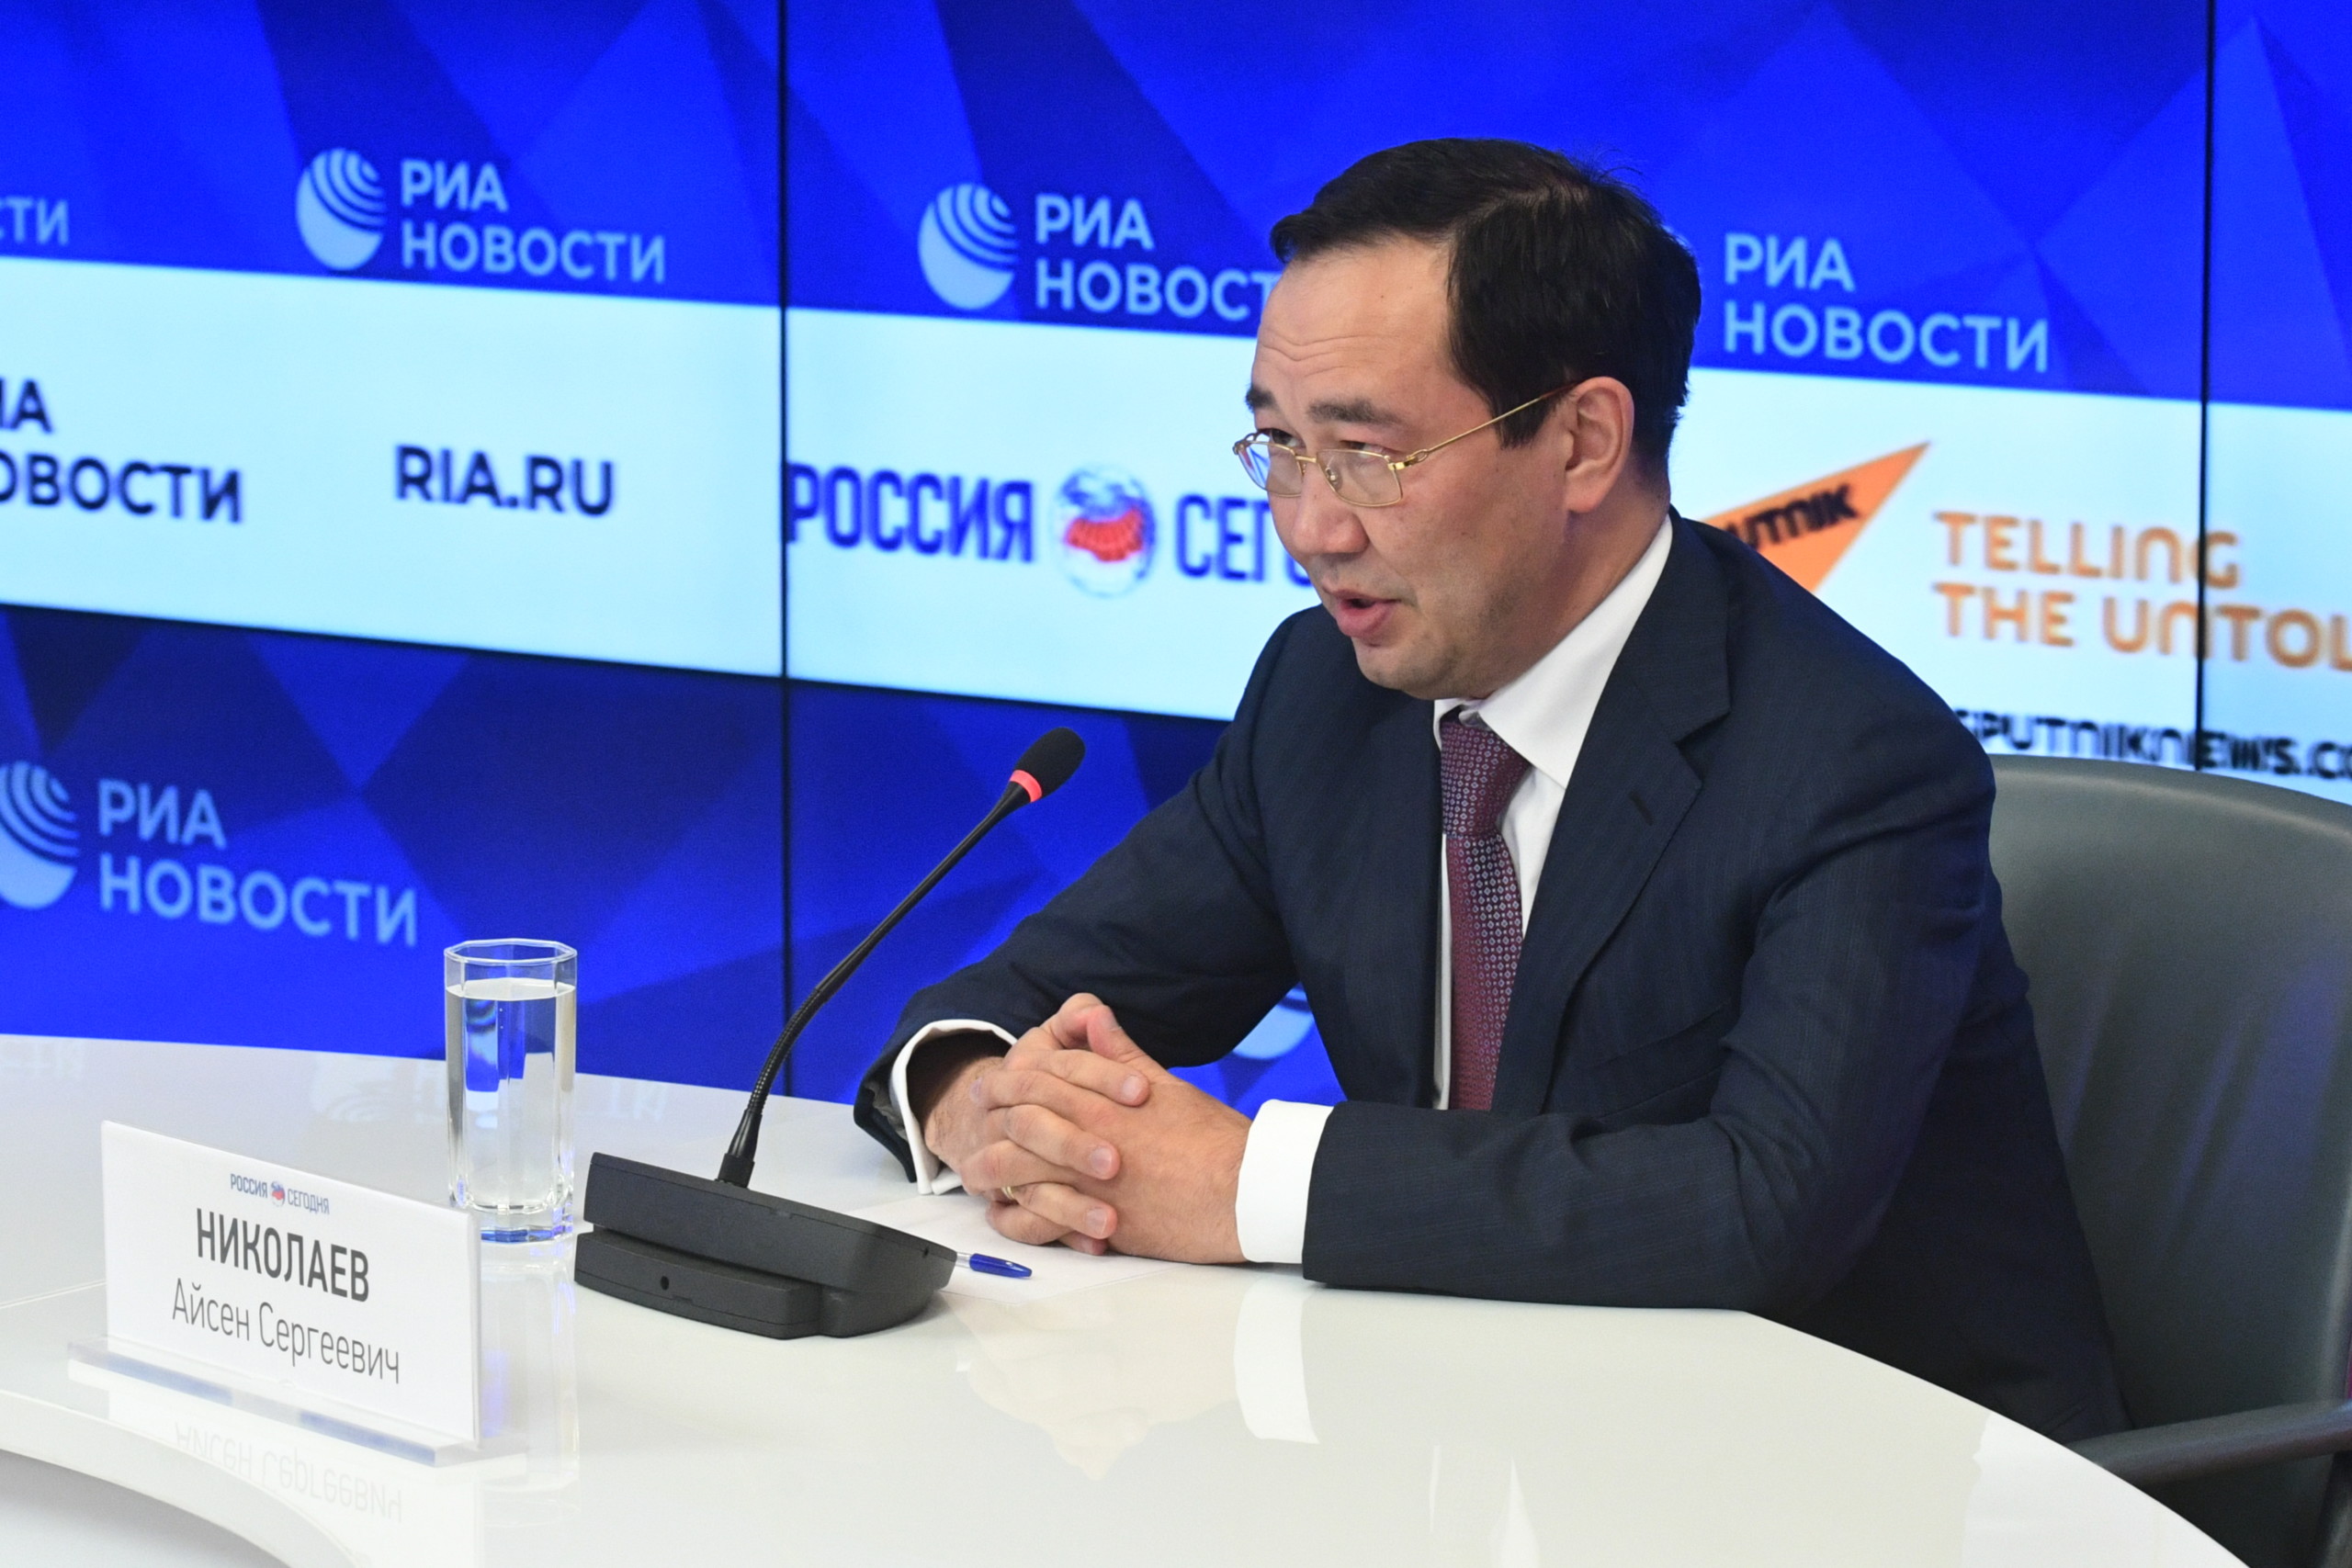 Айсен Николаев: WADA в некоторых своих действиях переходит границы человеческого приличия